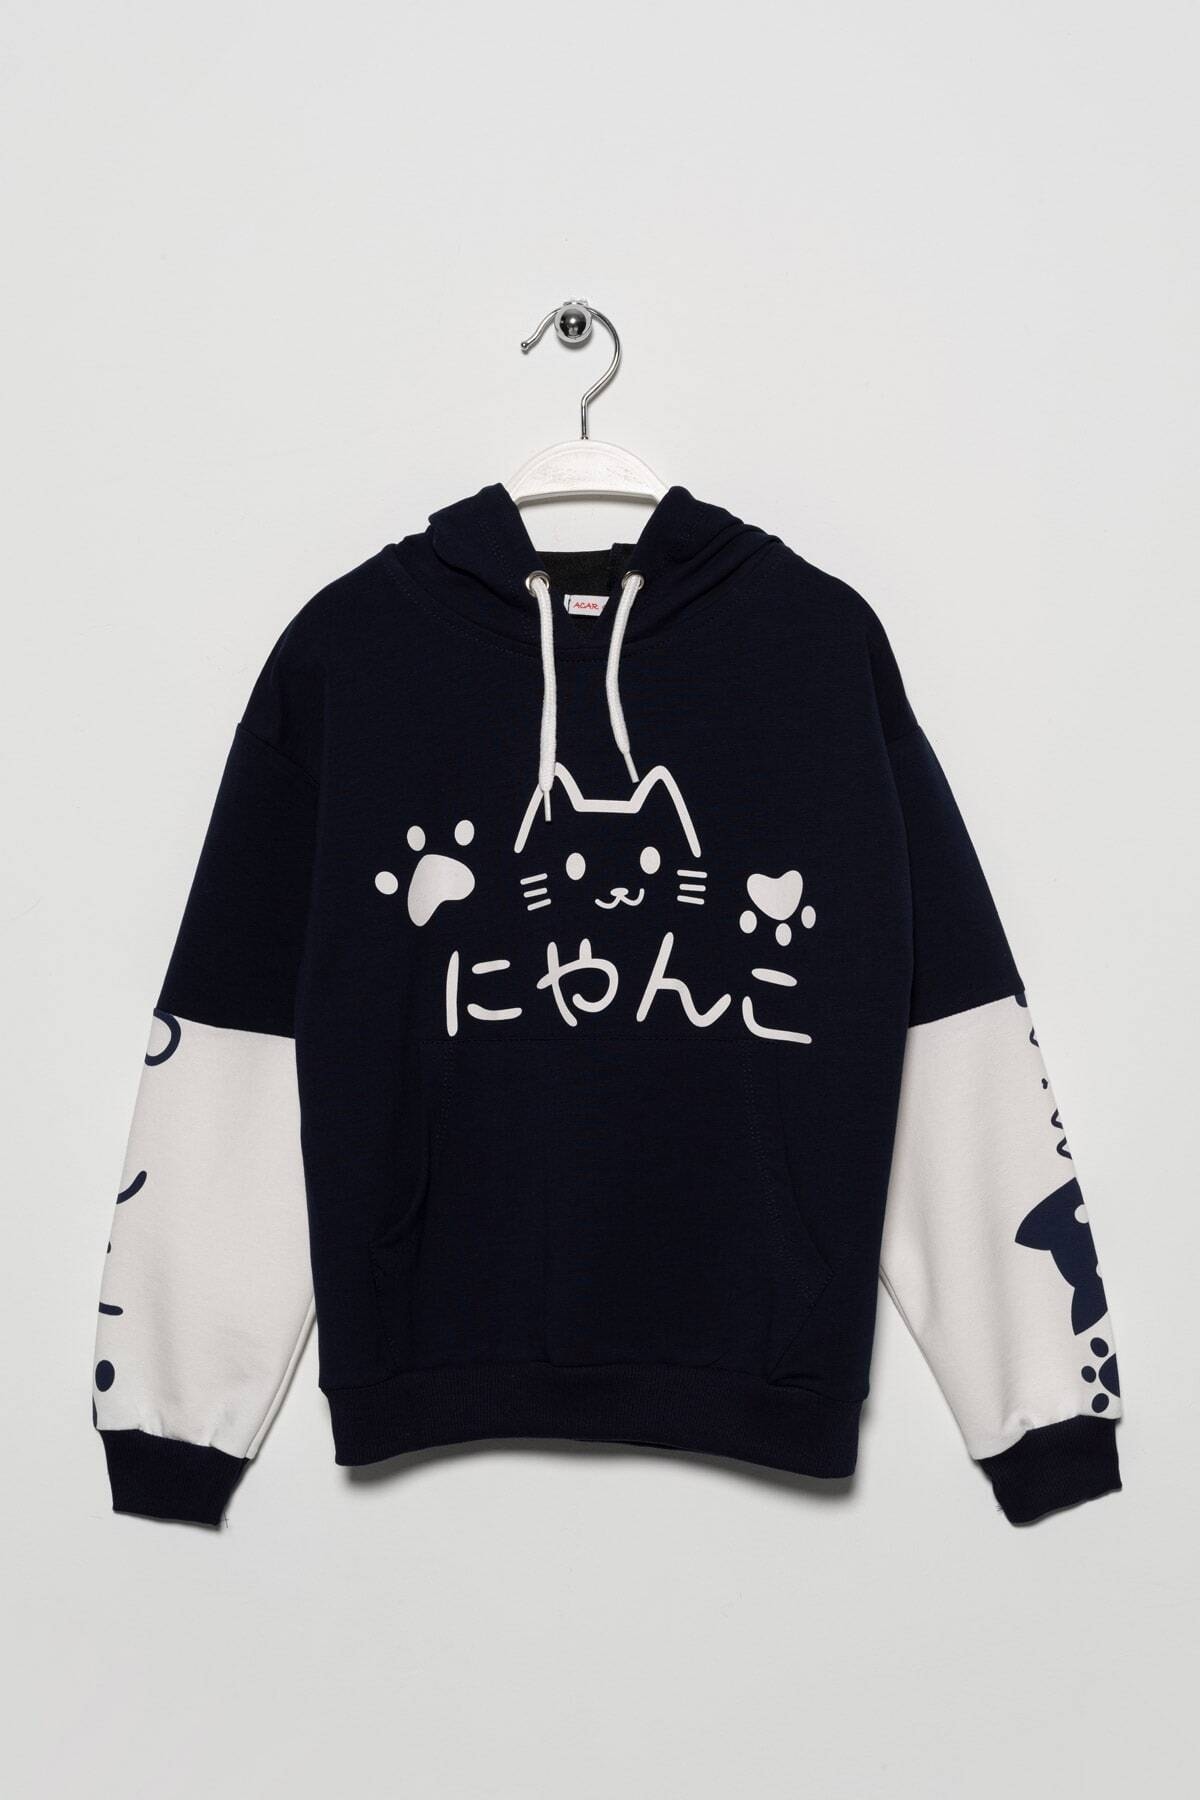 Levně zepkids Girls' Cat Printed Kangaroo Pocket Sweatshirt.